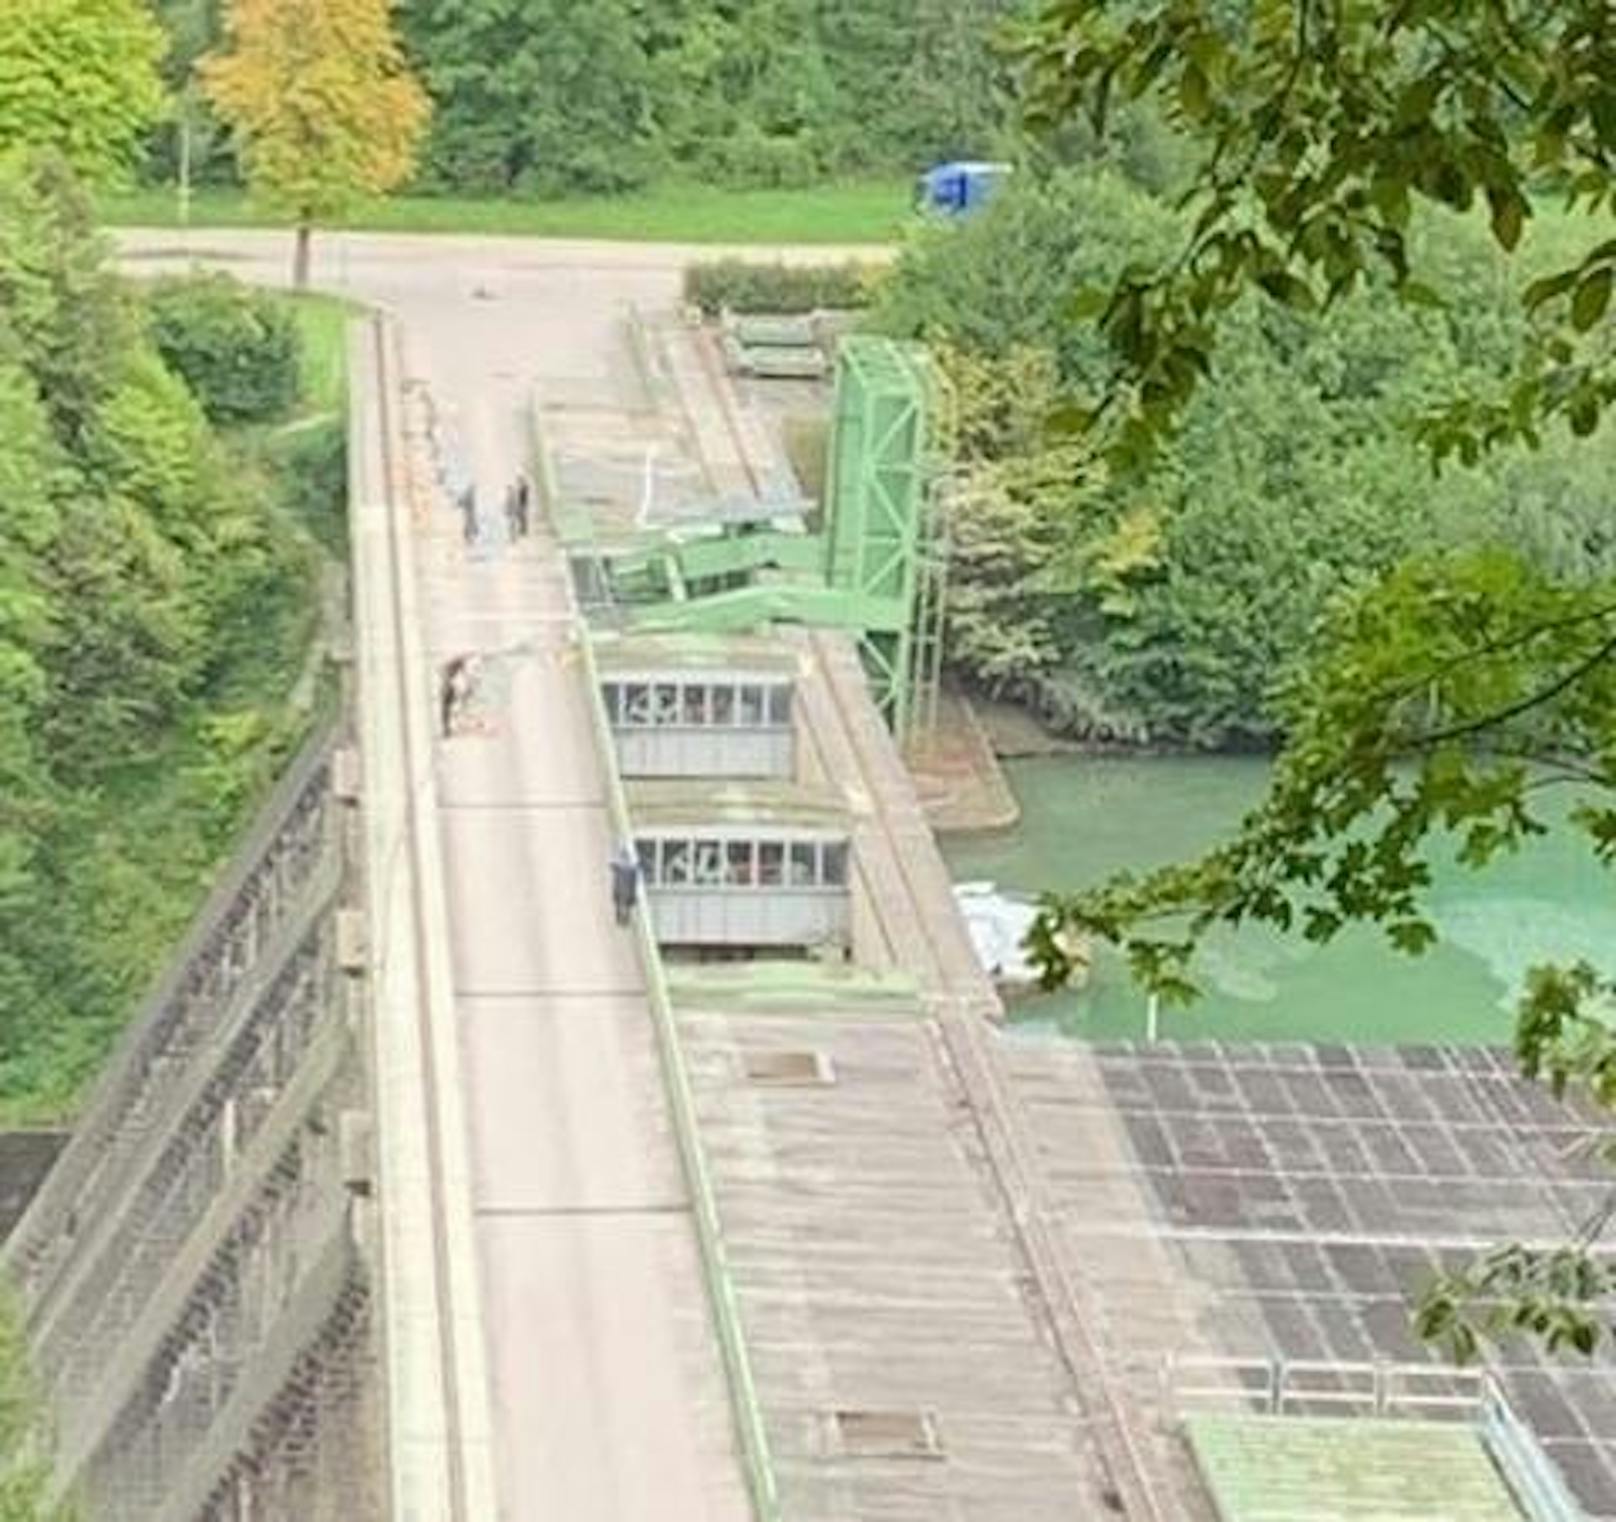 Fotos zeigen den abgeknickten 40-Tonnen-Kran beim Kraftwerk Ternberg.